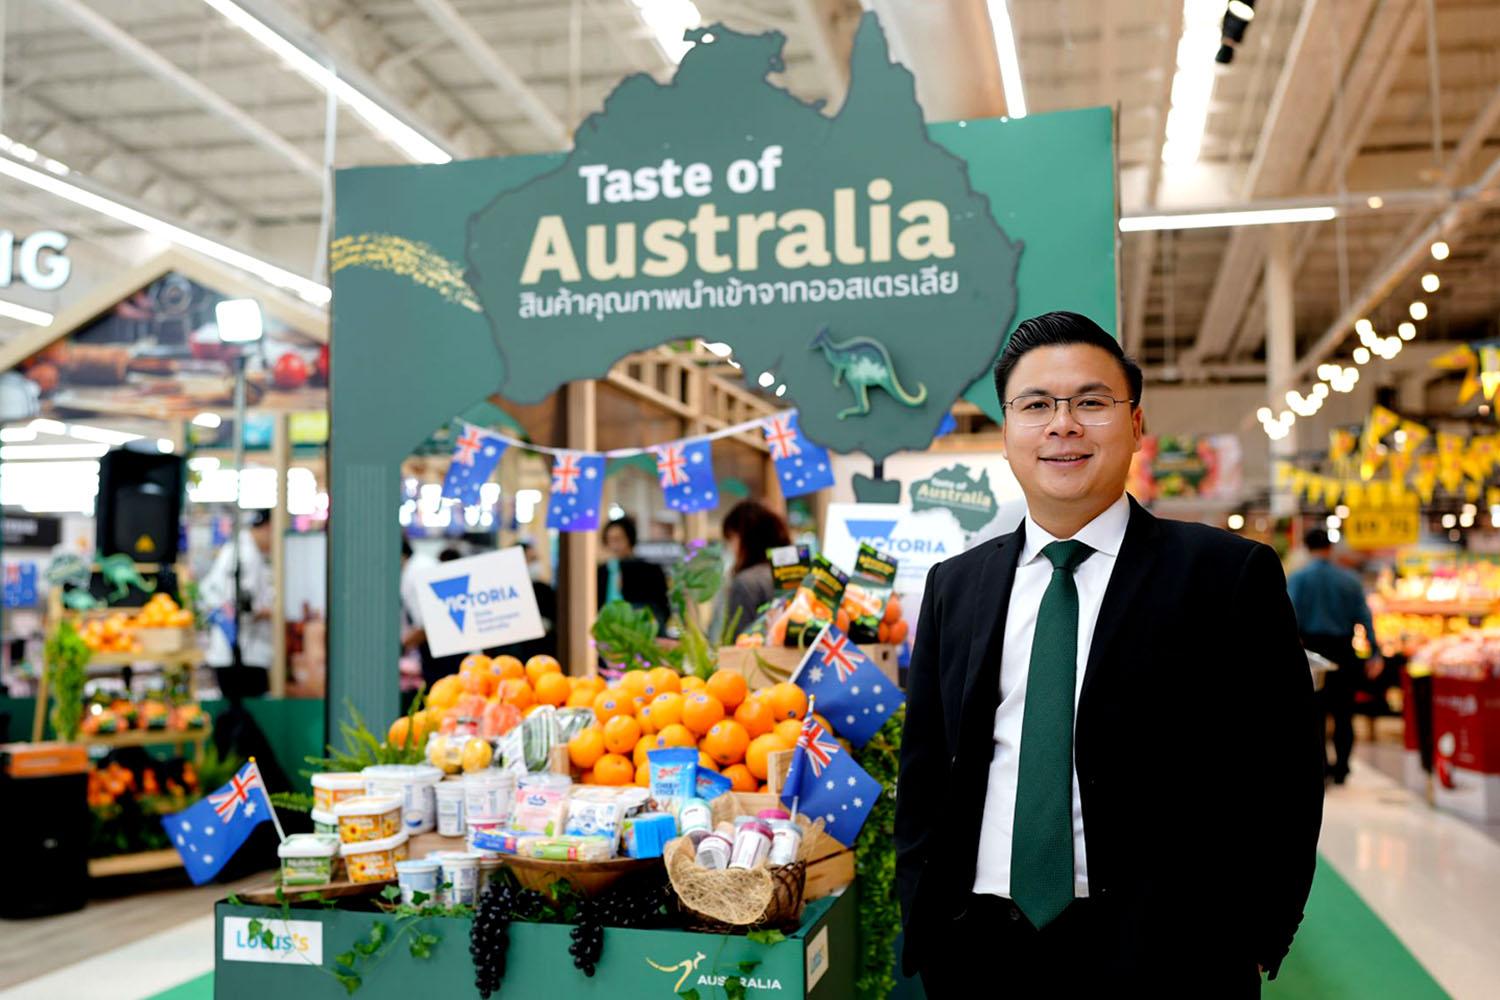 Lotus’s-taste-of-australia-high-quality-food-affordable-price-SPACEBAR-Hero.jpg